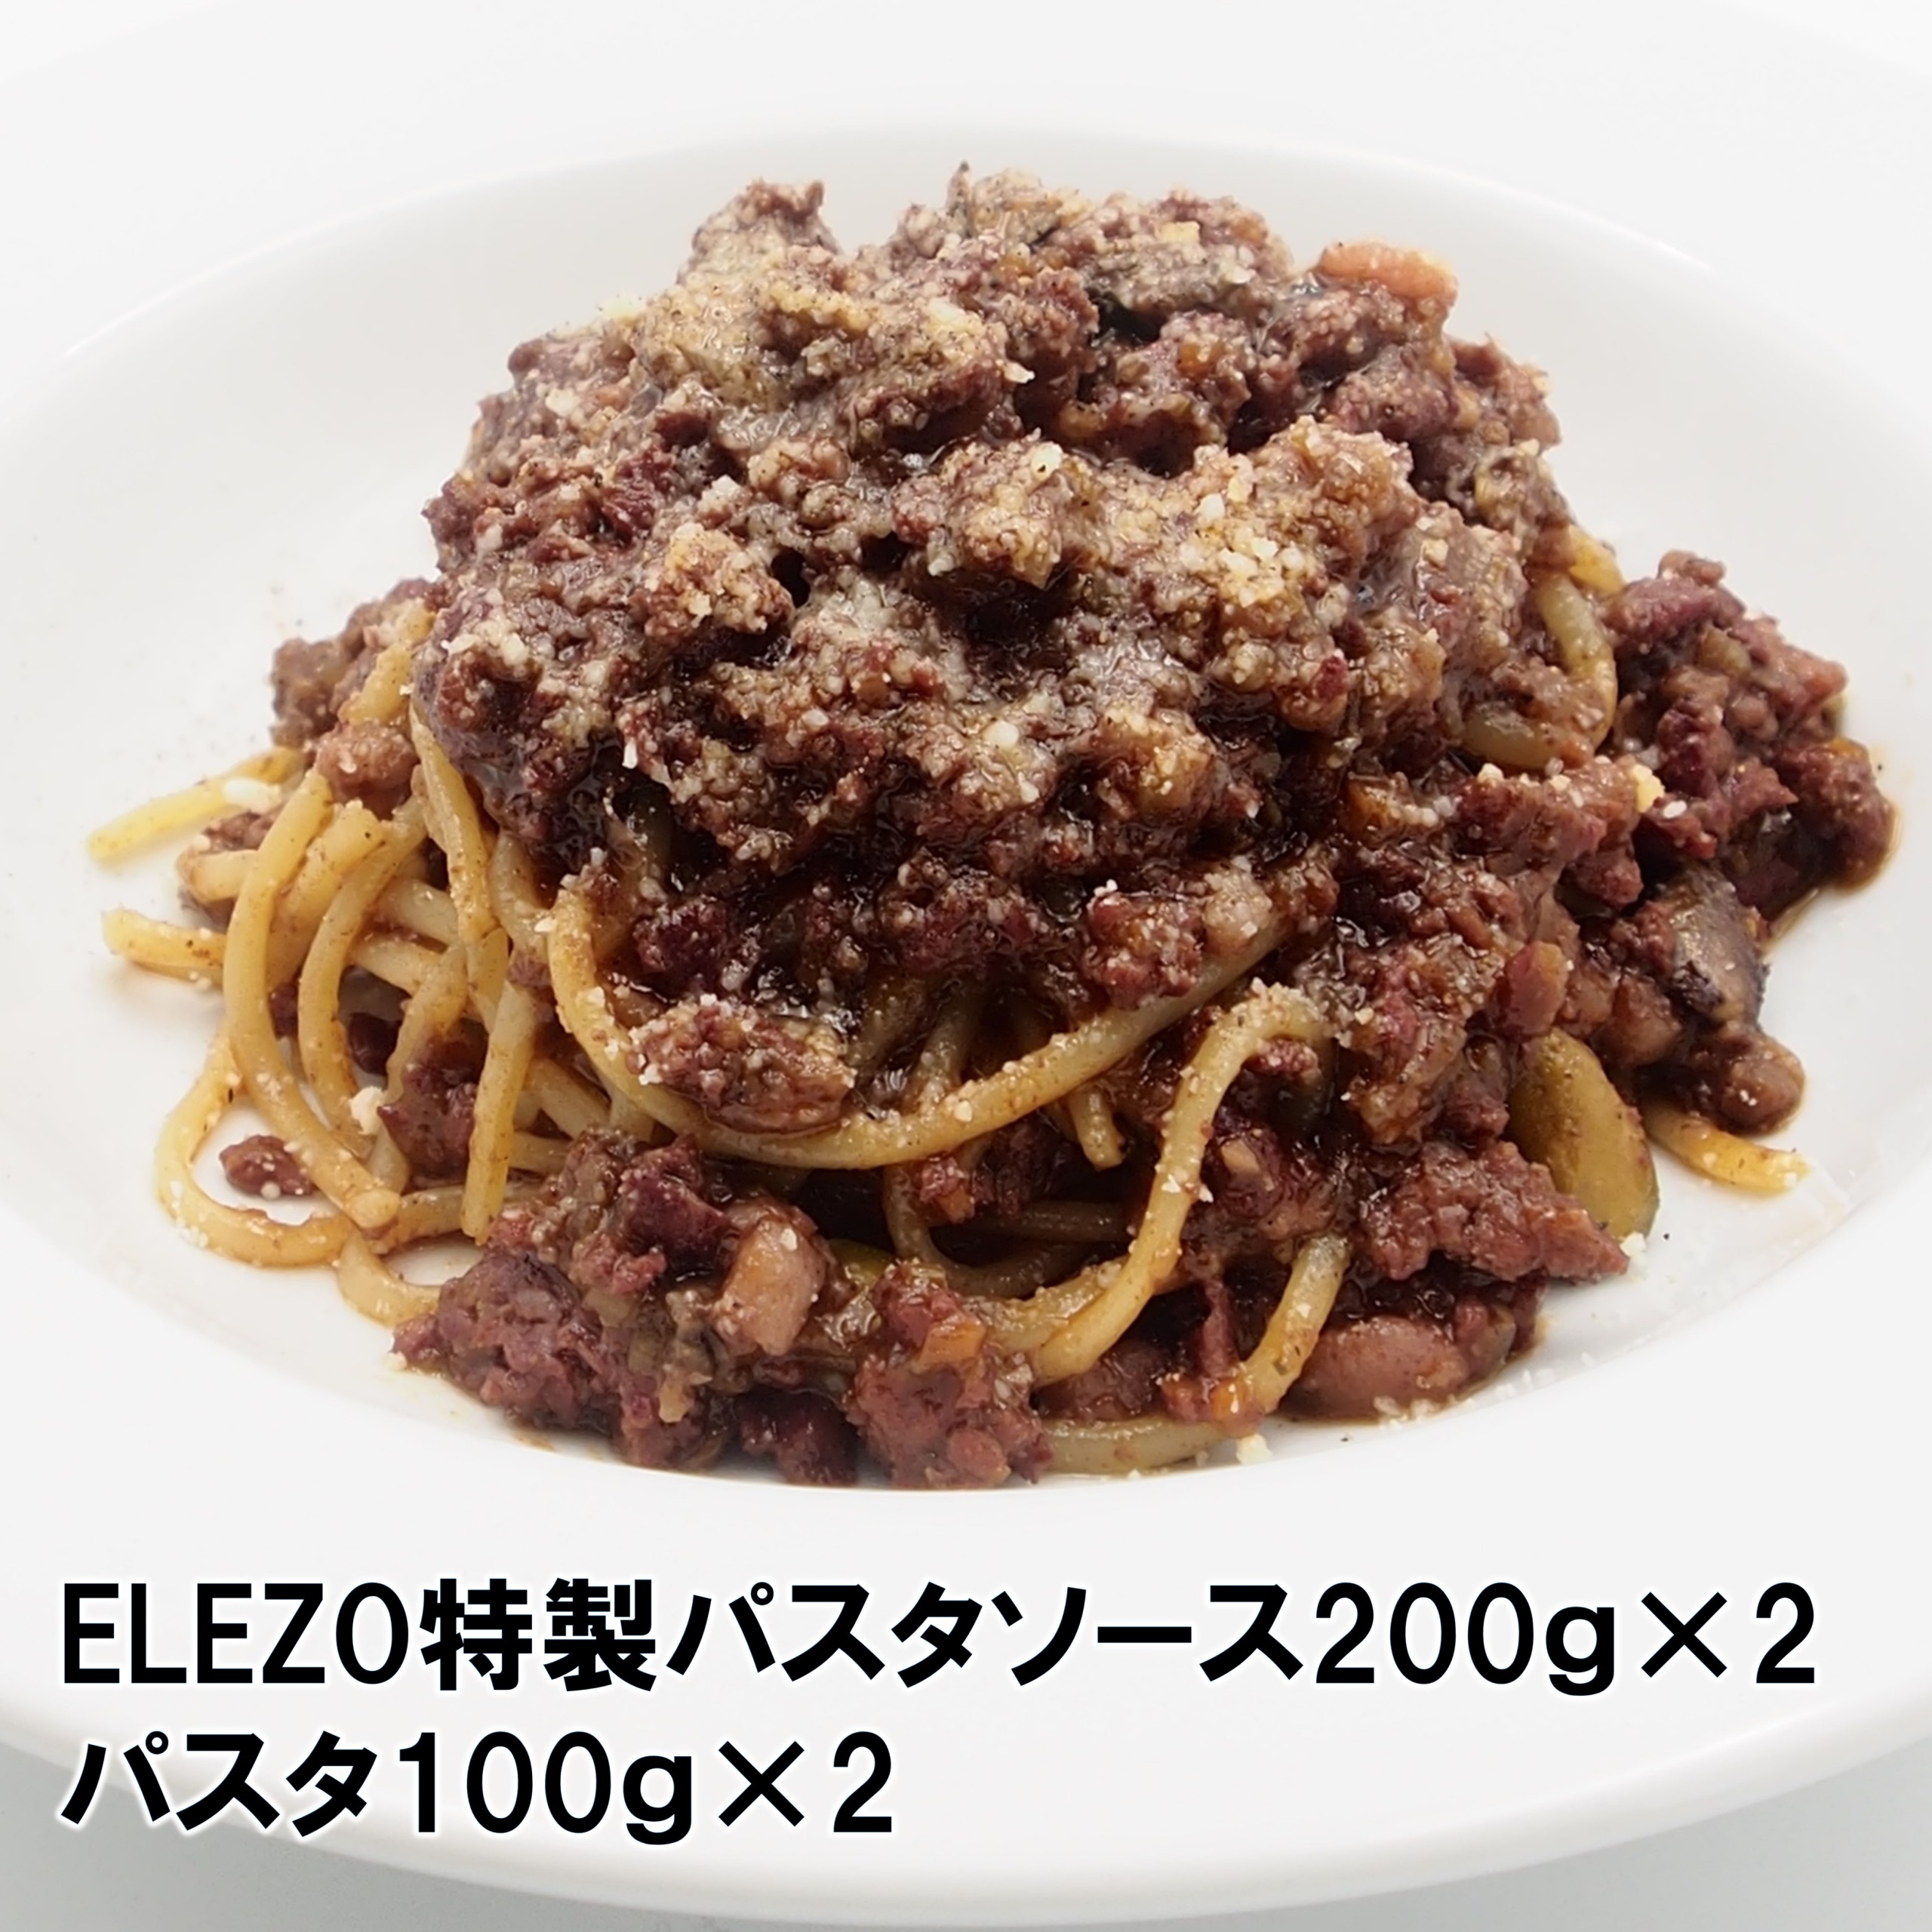 肉屋のパスタソースセットＡ【株式会社ELEZO社】